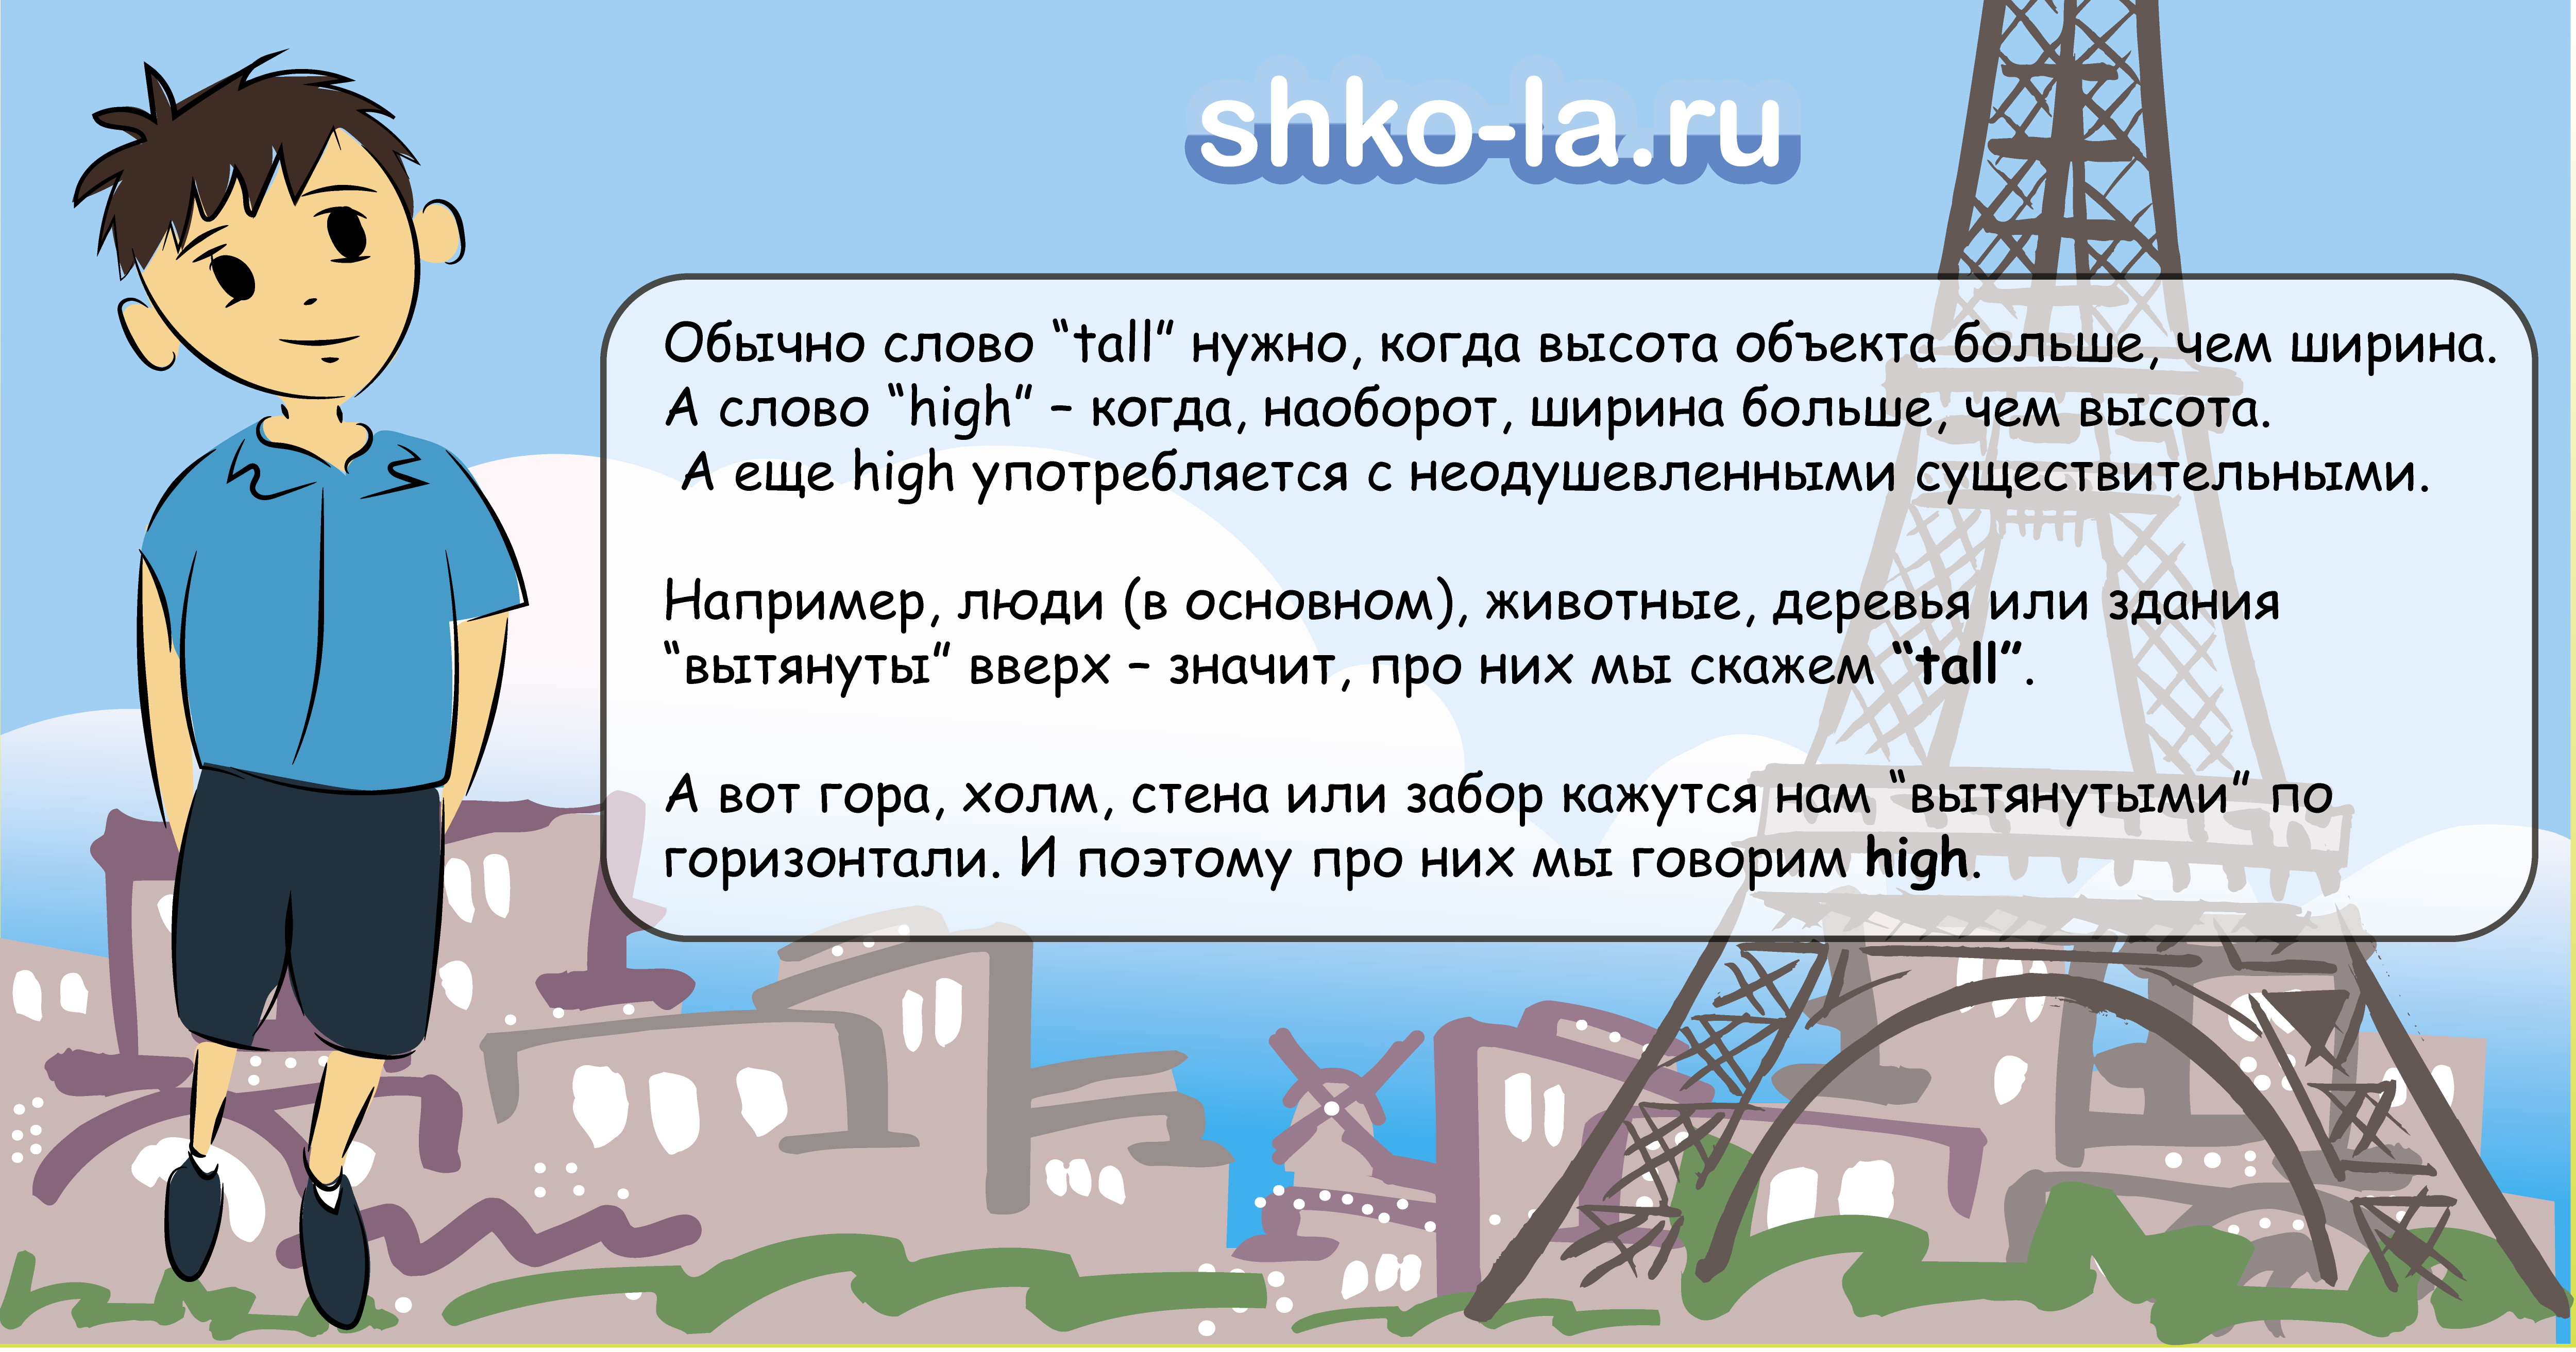 shko-la.ru - английский по Skype - разница между tall и high